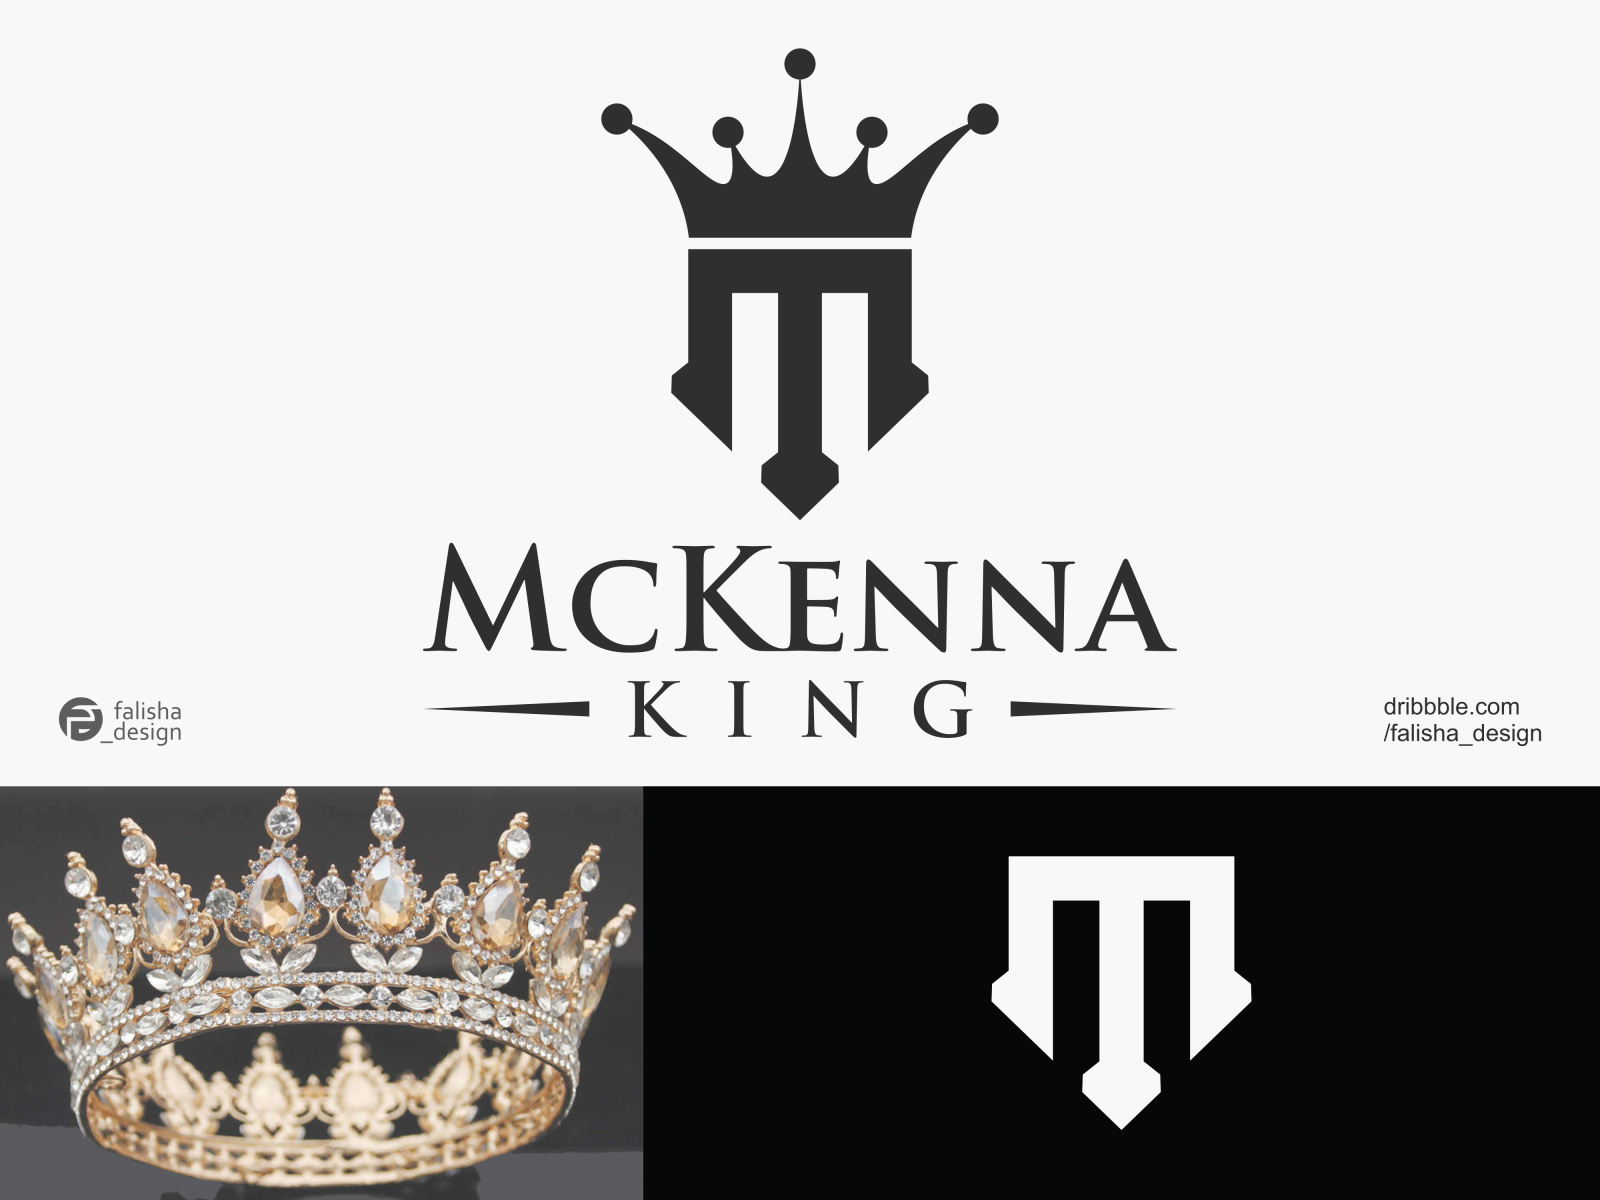 Lion king logo design golden Royalty Free Vector Image